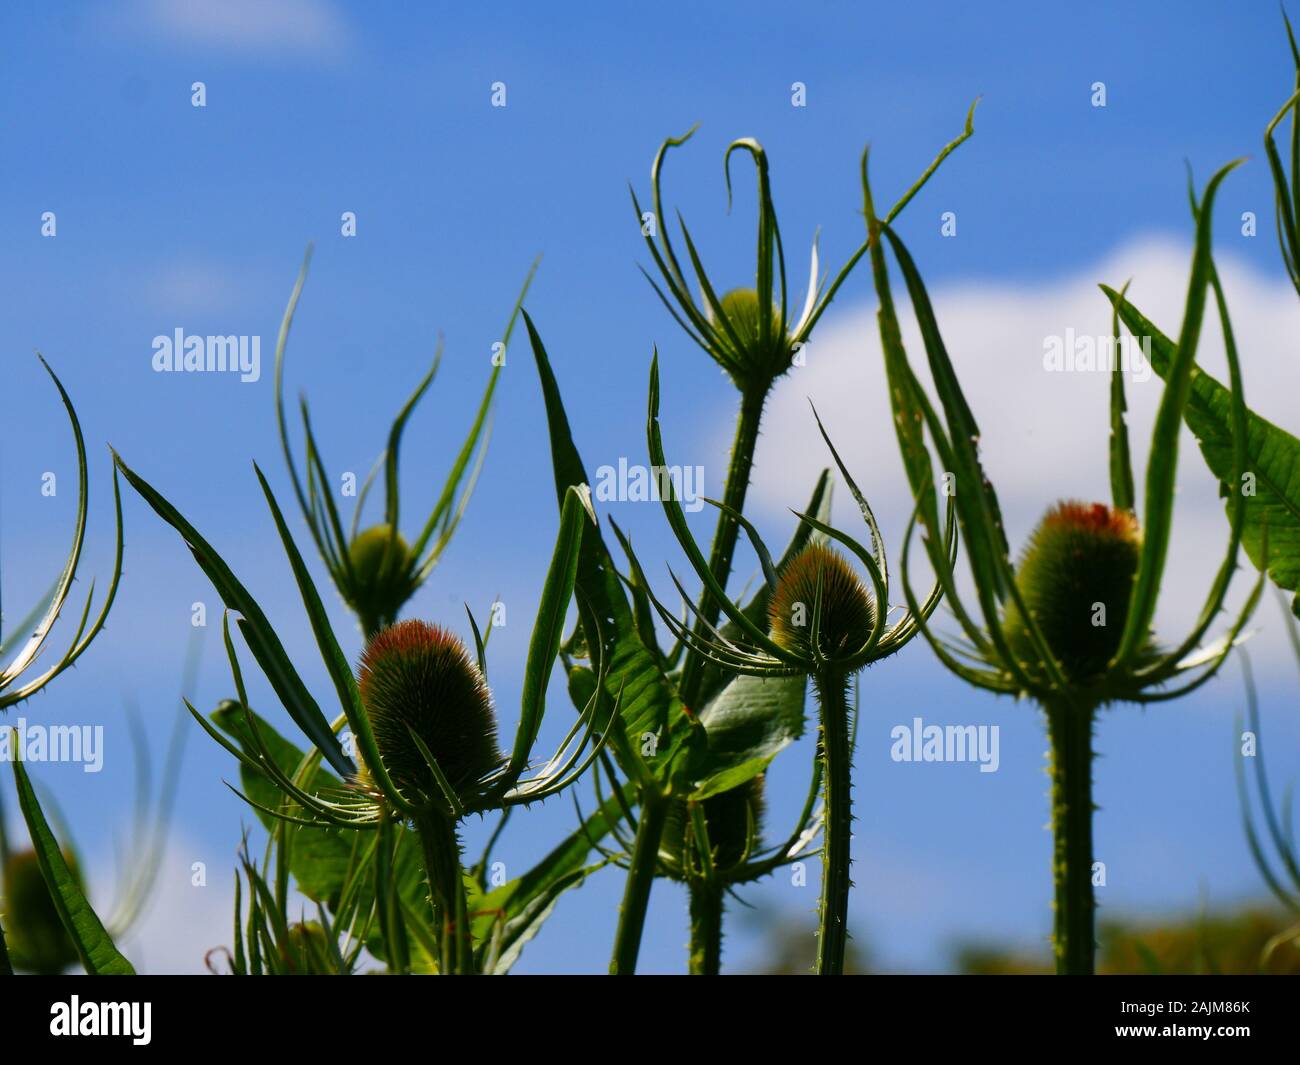 Dipsacus, Teasel flowerheads against a blue sky Stock Photo